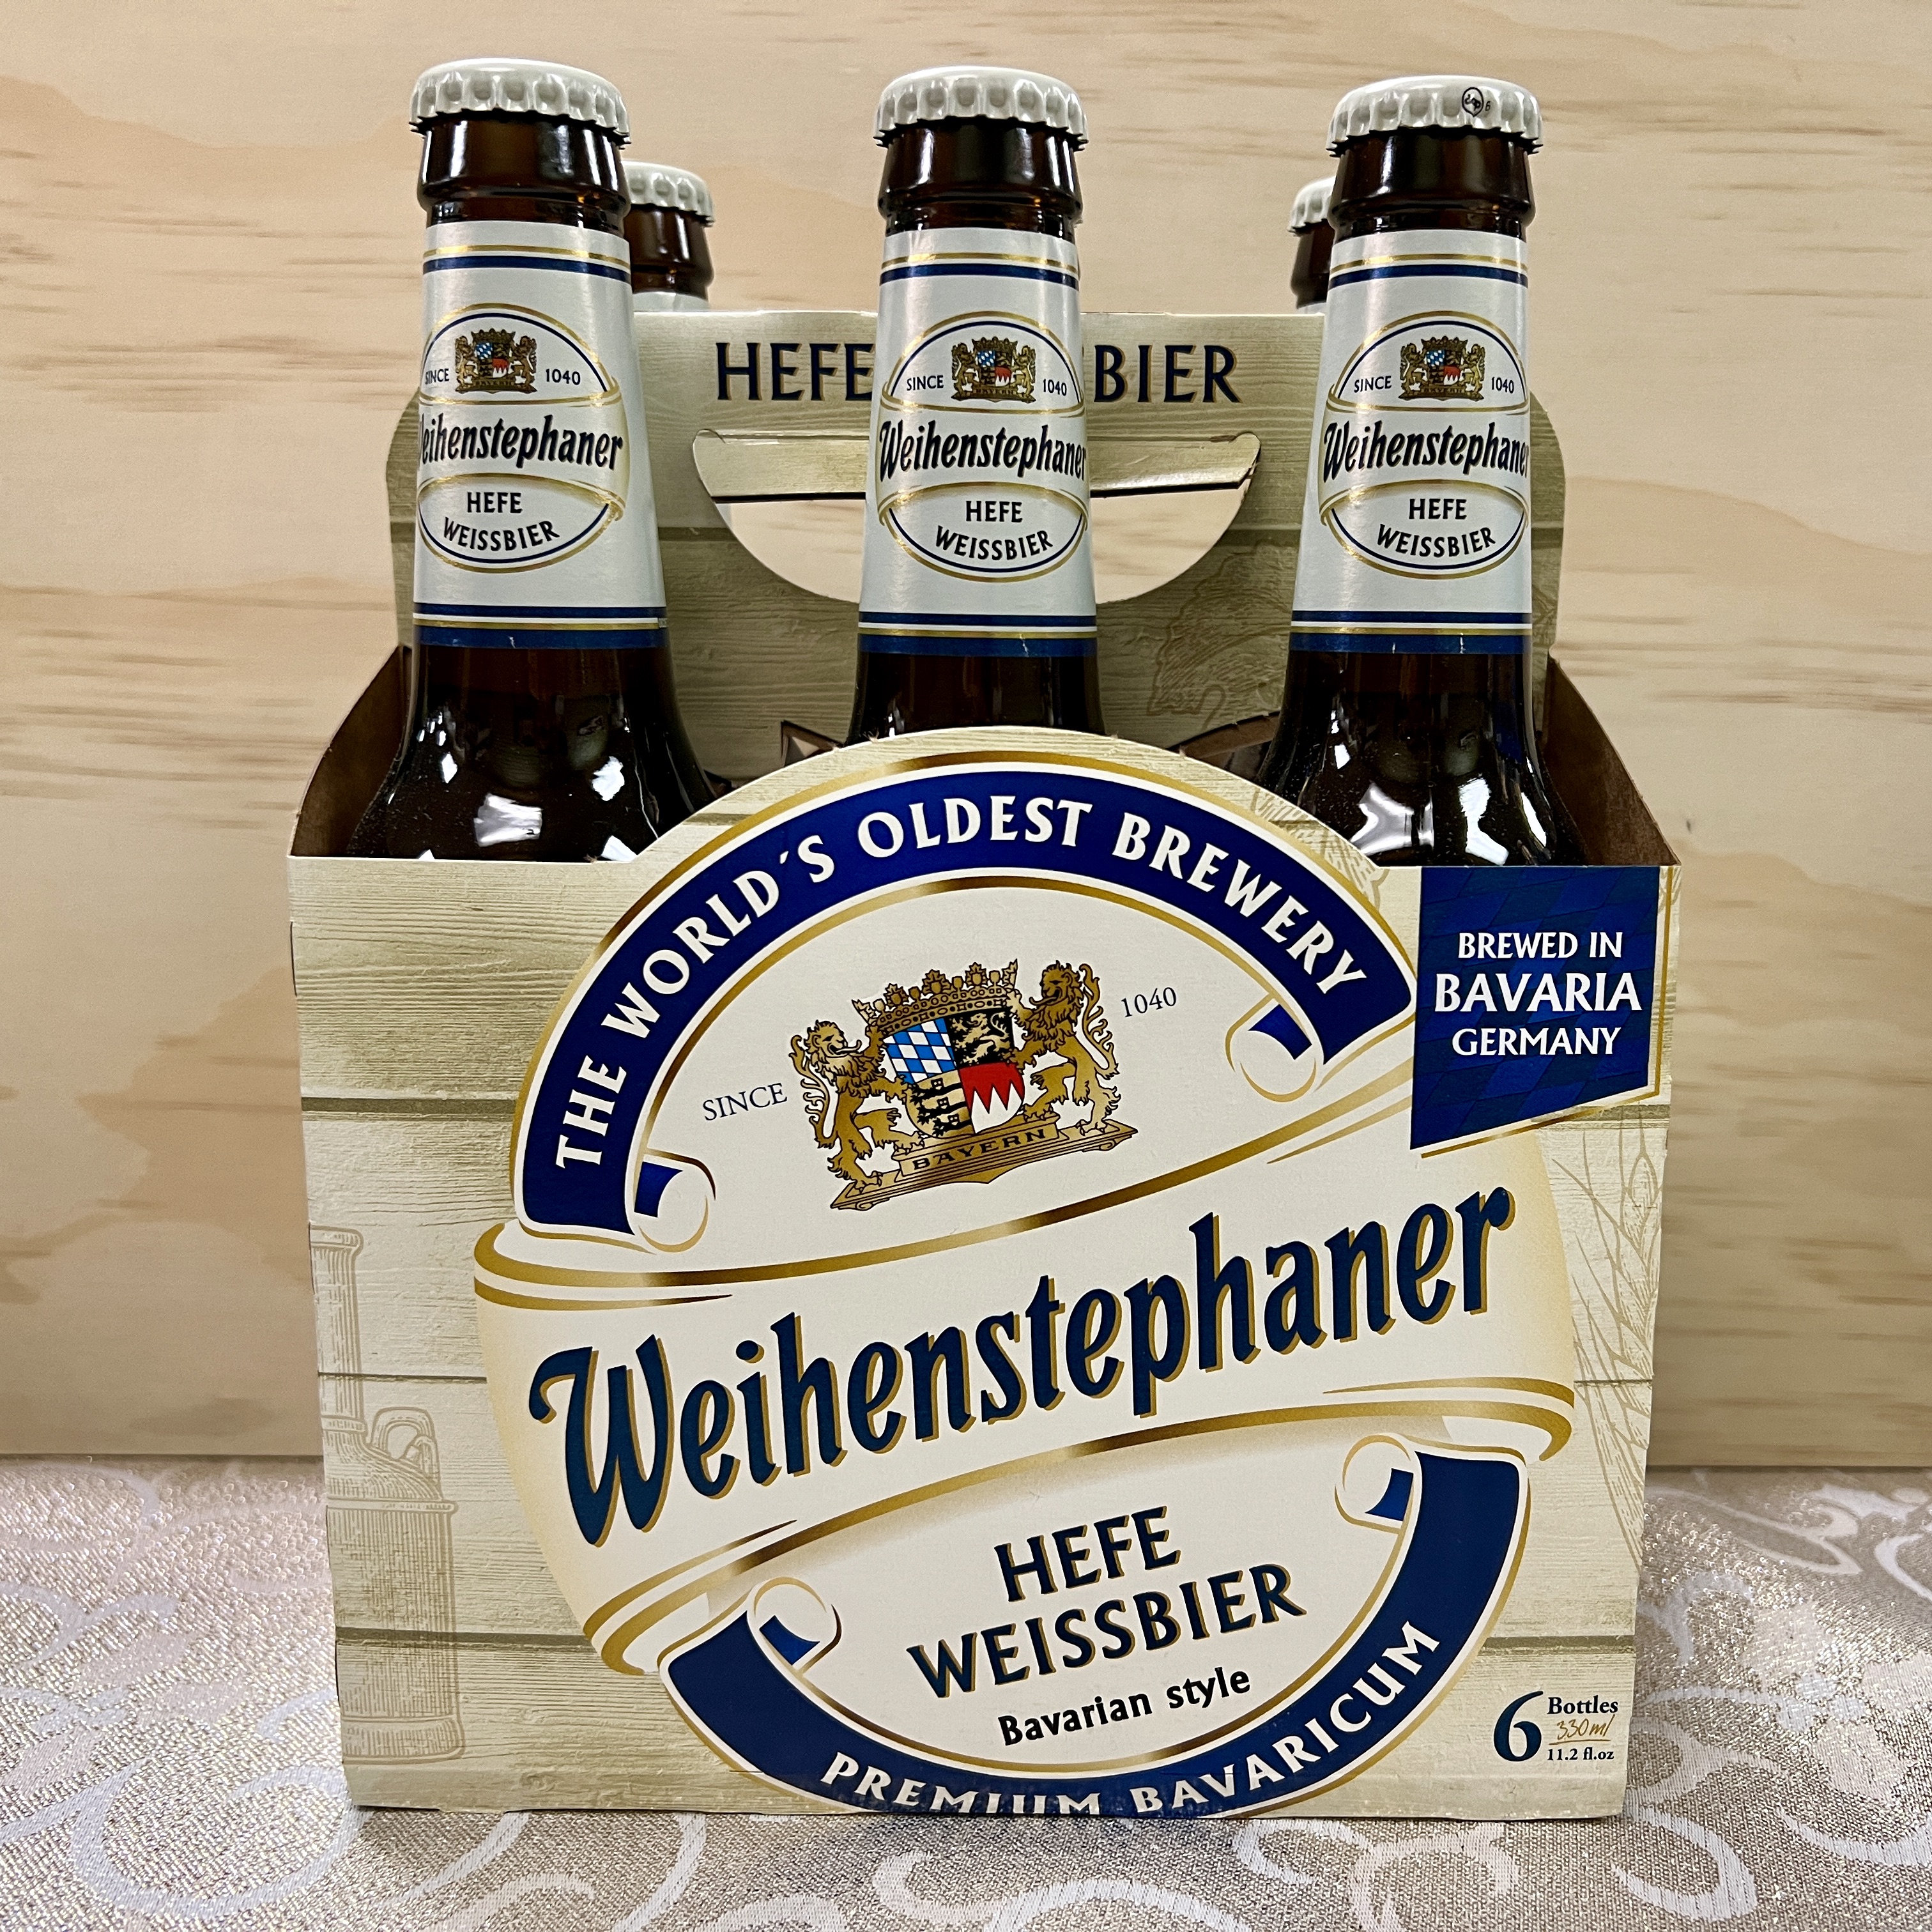 Weihenstephaner Hefe Weissbier 6 x 12 oz bottles